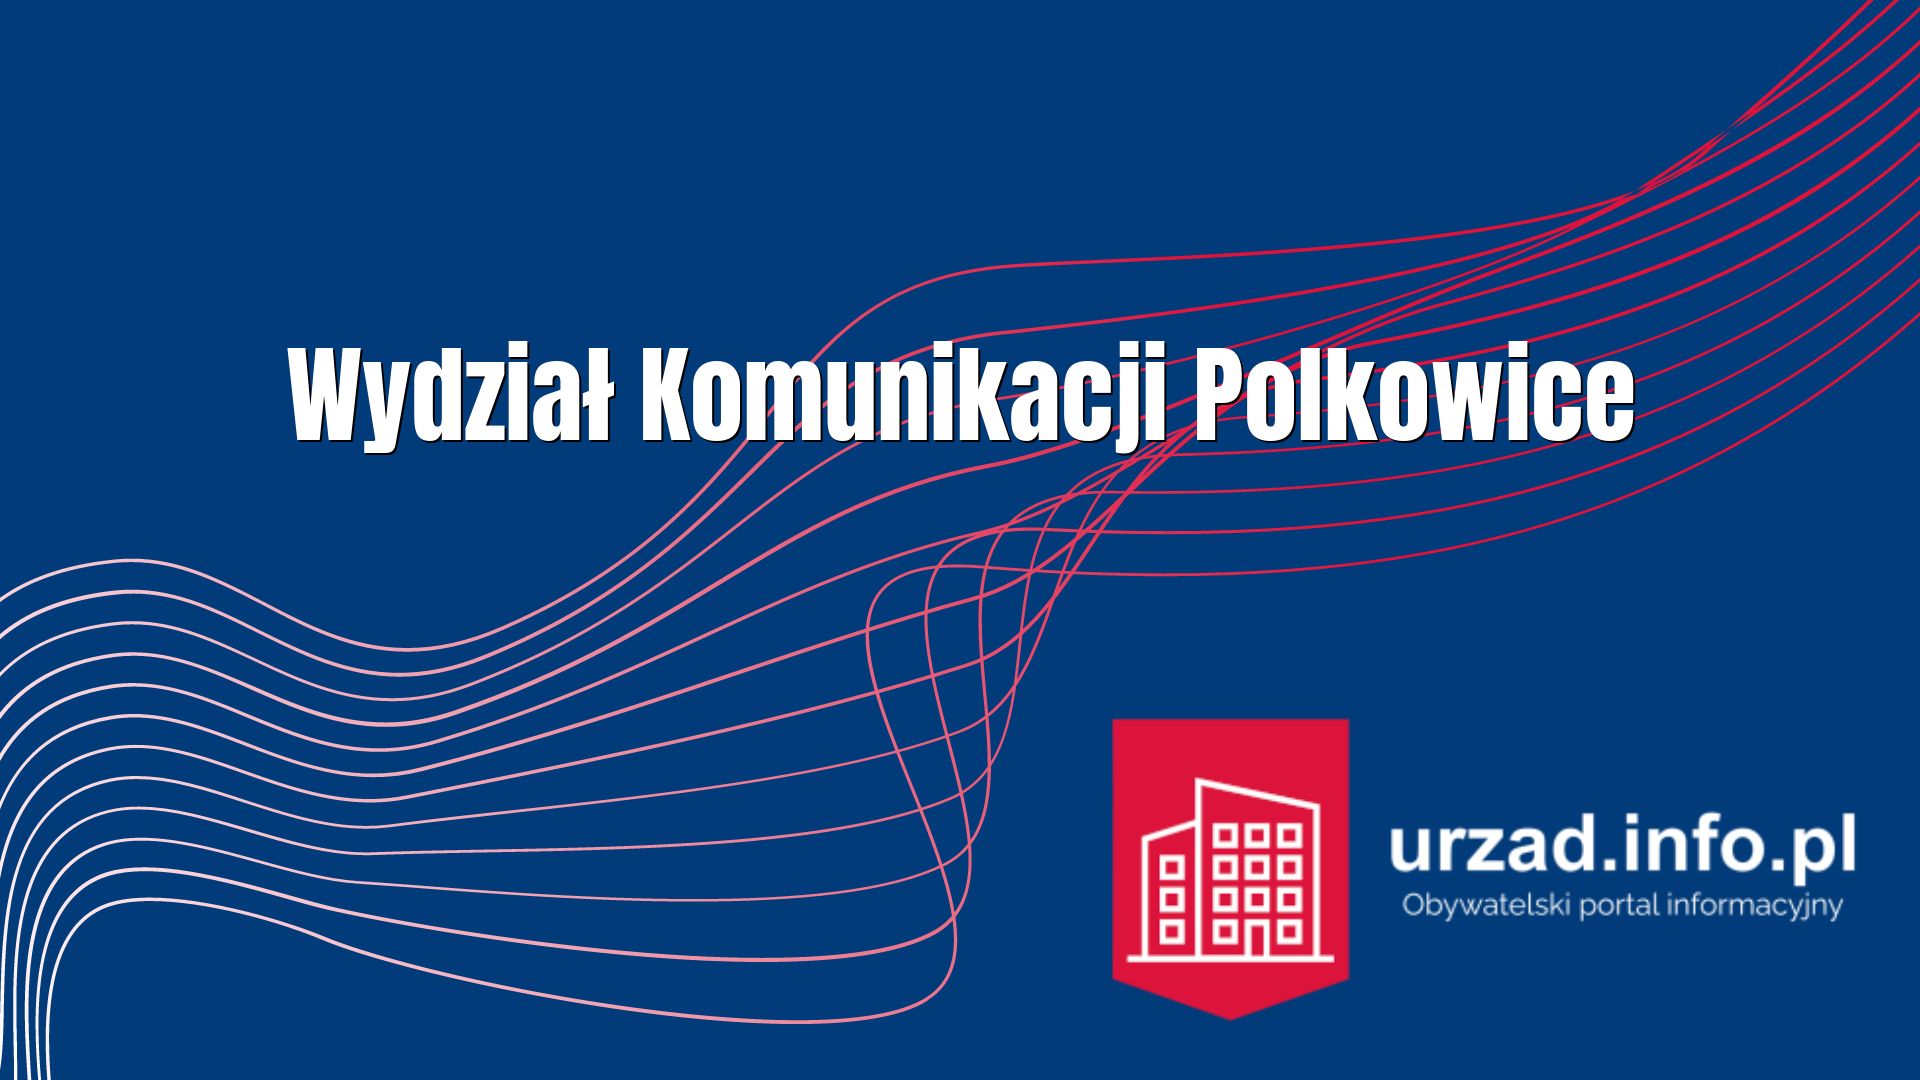 Wydział Komunikacji Polkowice